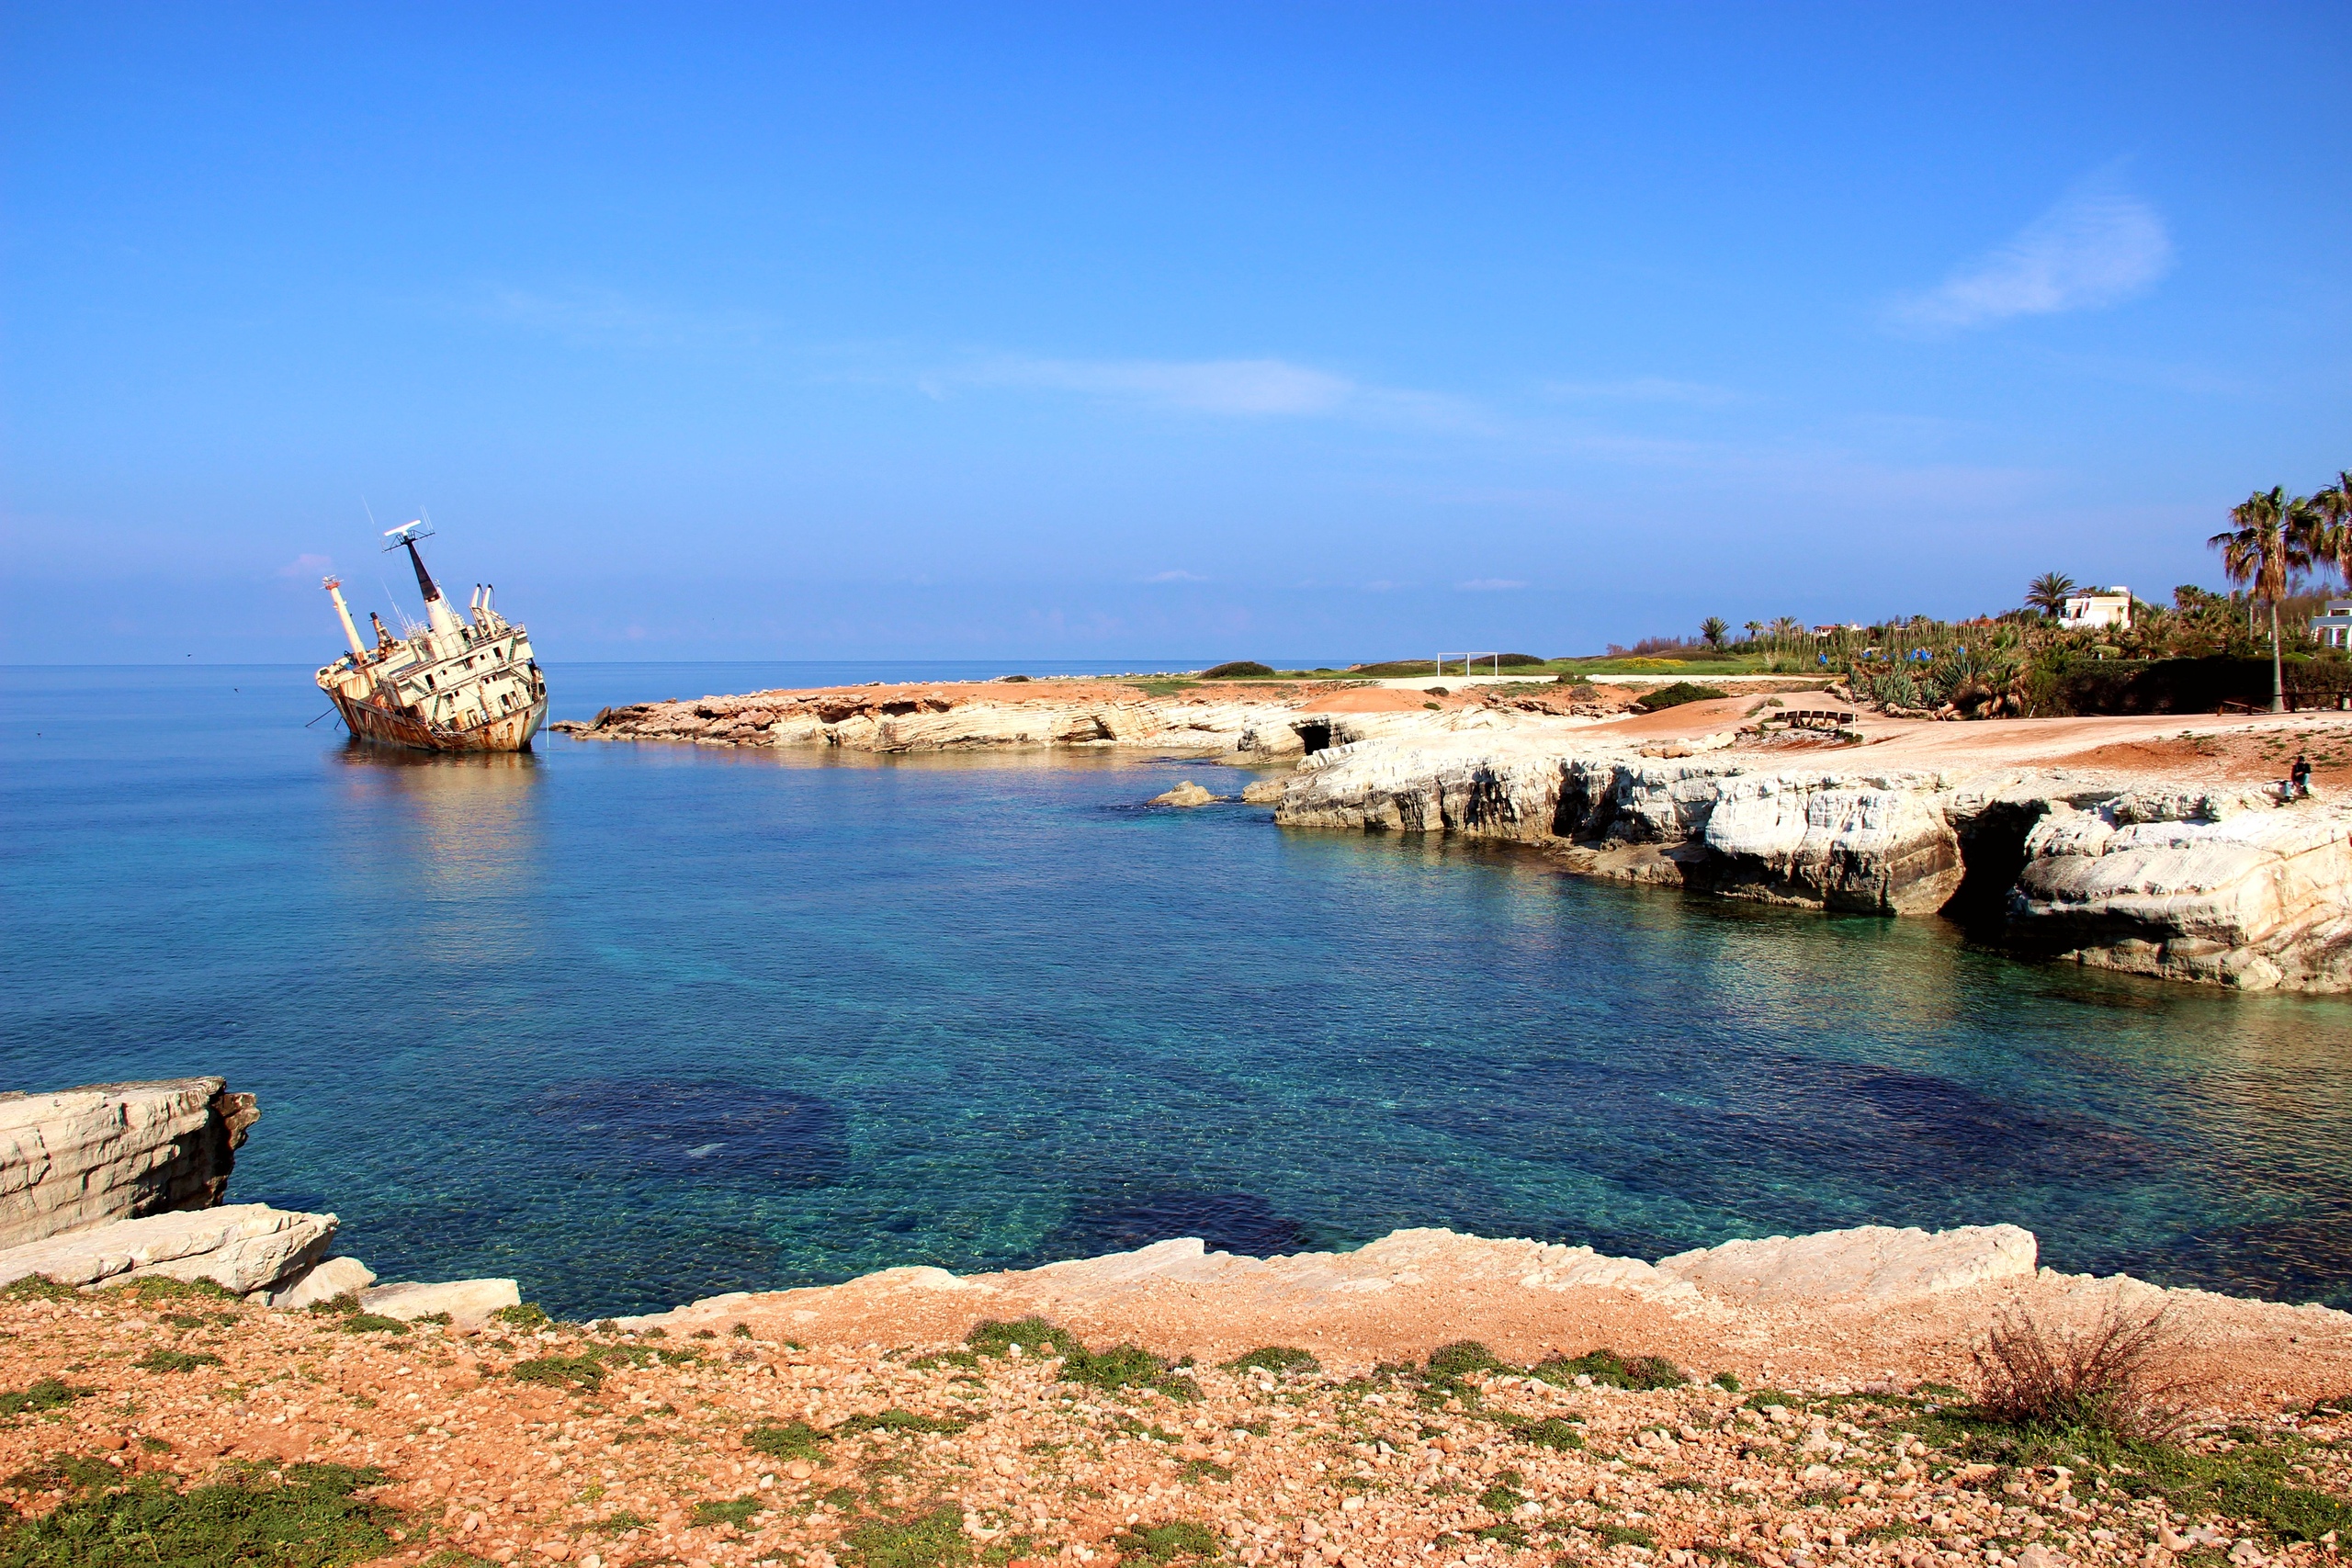 Остров Кипр город Пафос